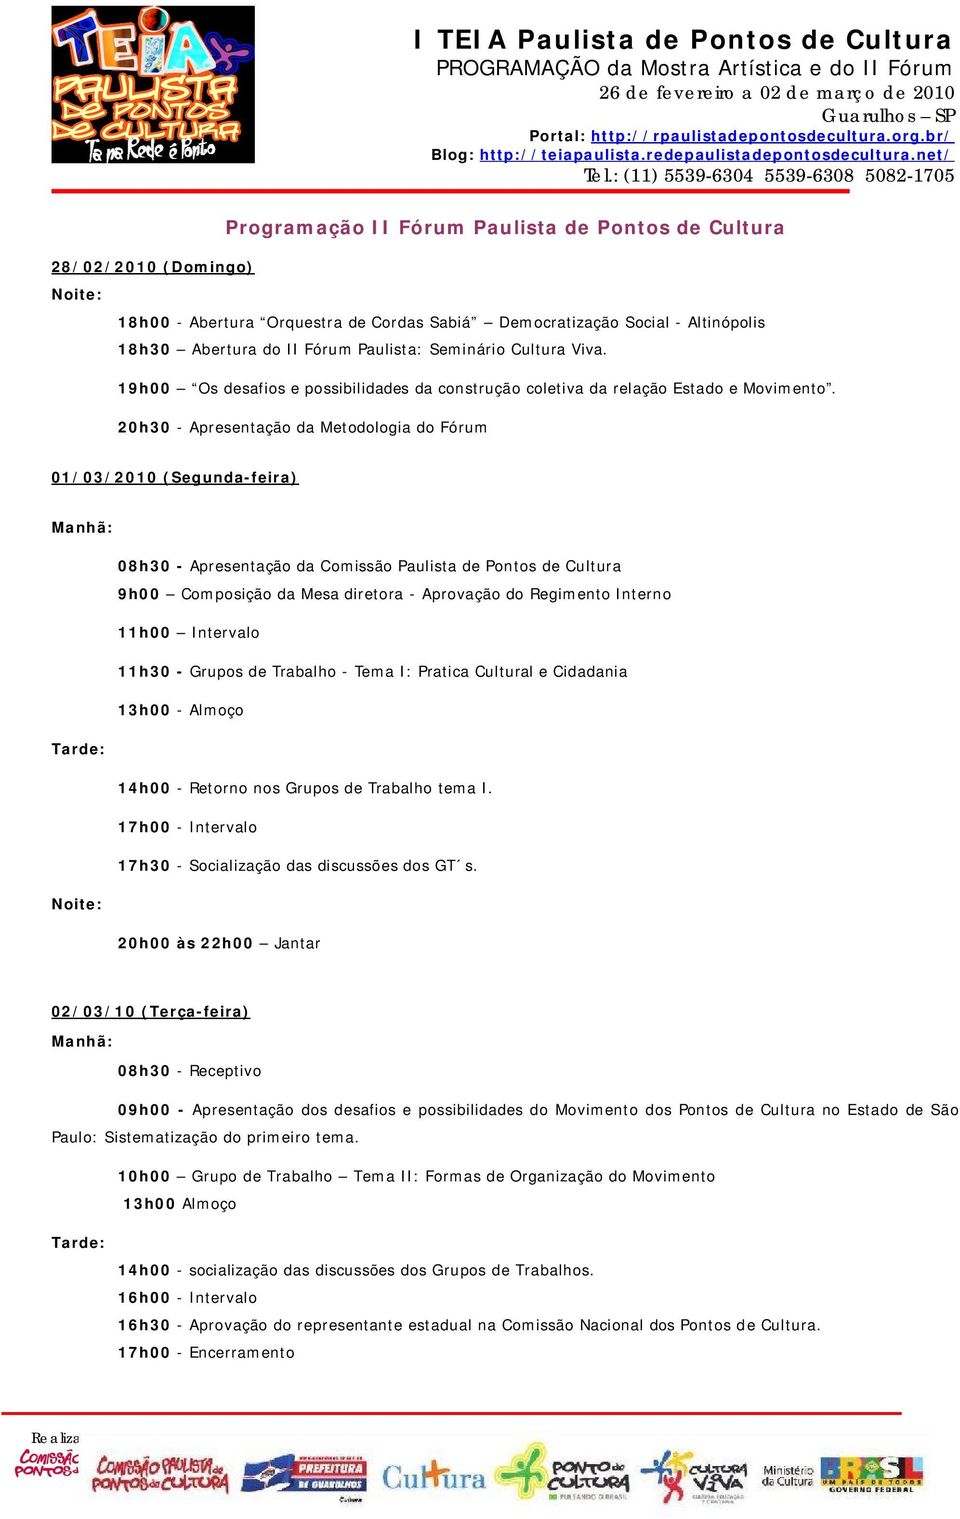 20h30 - Apresentação da Metodologia do Fórum 01/03/2010 (Segunda-feira) Manhã: 08h30 - Apresentação da Comissão Paulista de Pontos de Cultura 9h00 Composição da Mesa diretora - Aprovação do Regimento